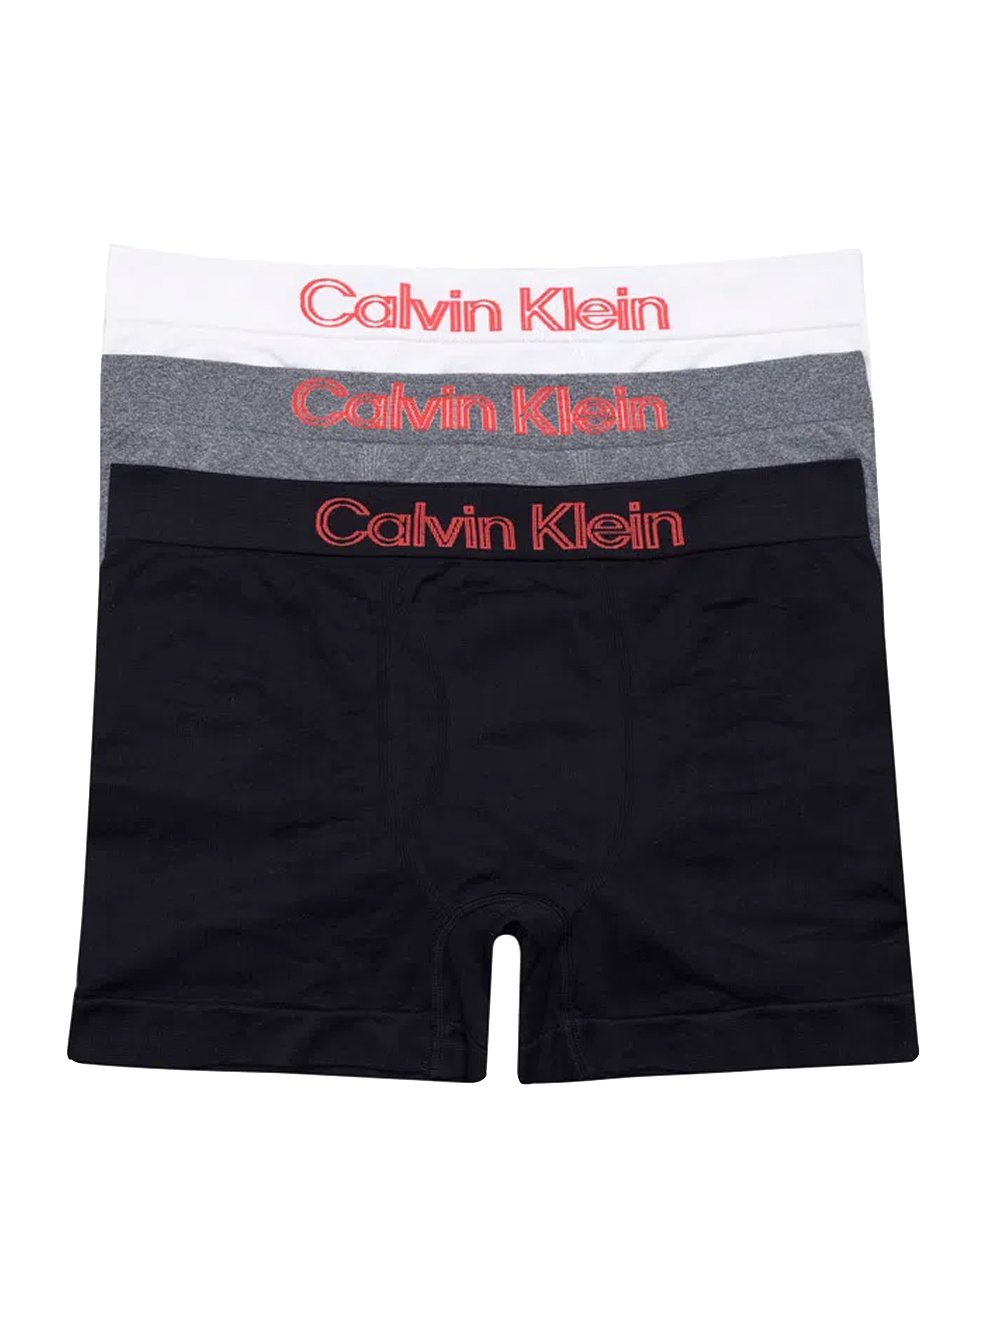 Cuecas Calvin Klein Underwear Trunk Seamless Outline Logo Branca Preta e  Mescla Pack 3UN